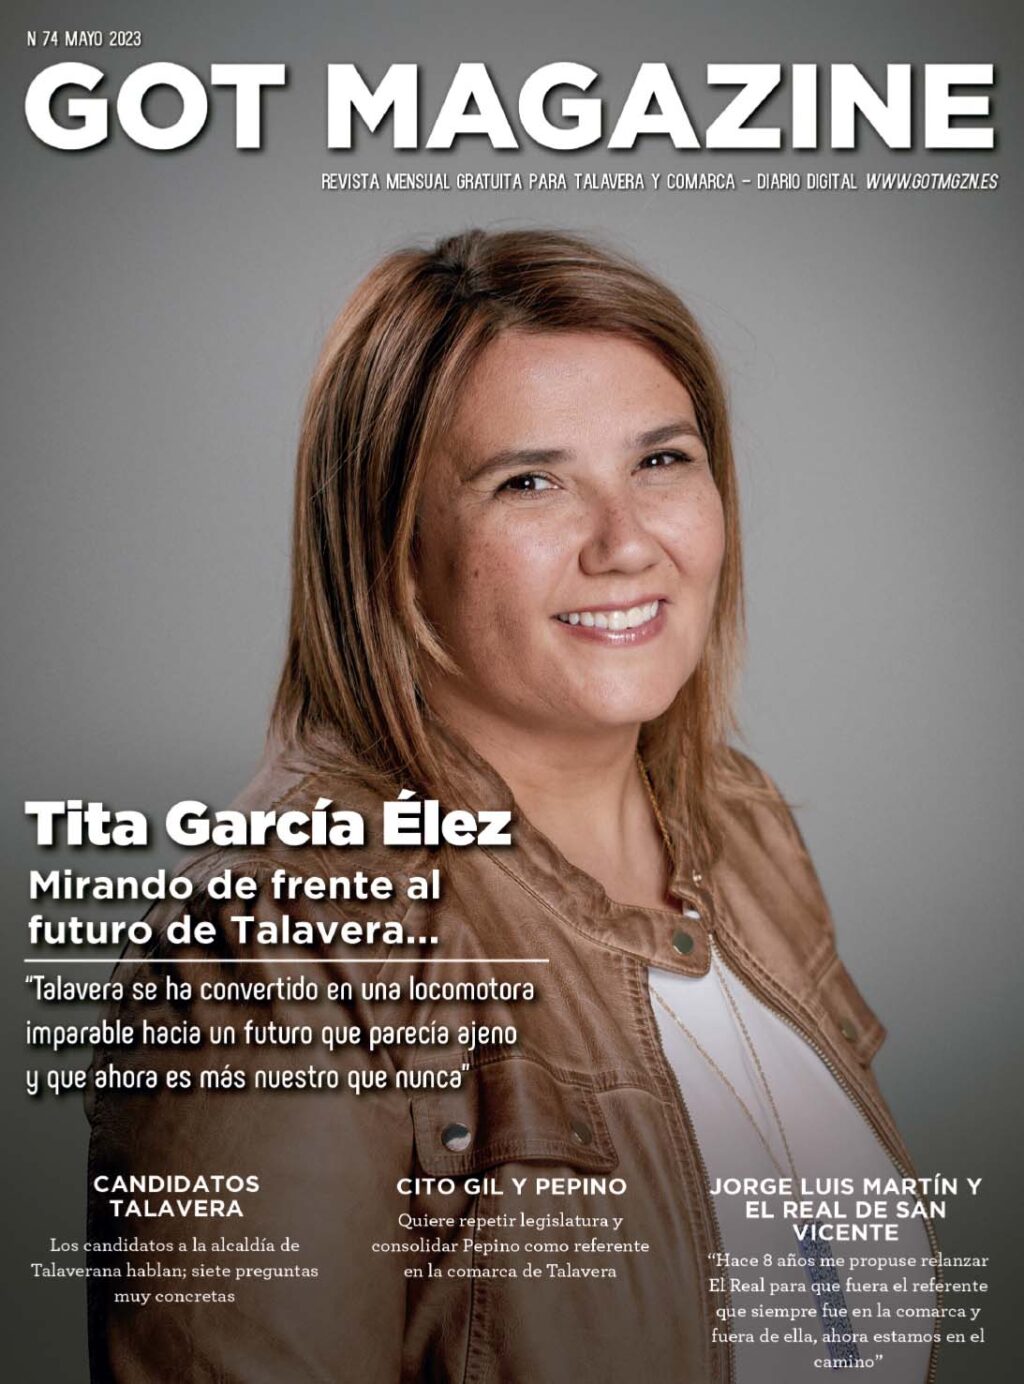 www.gotmgzn.es revista numero 74 elecciones Talavera